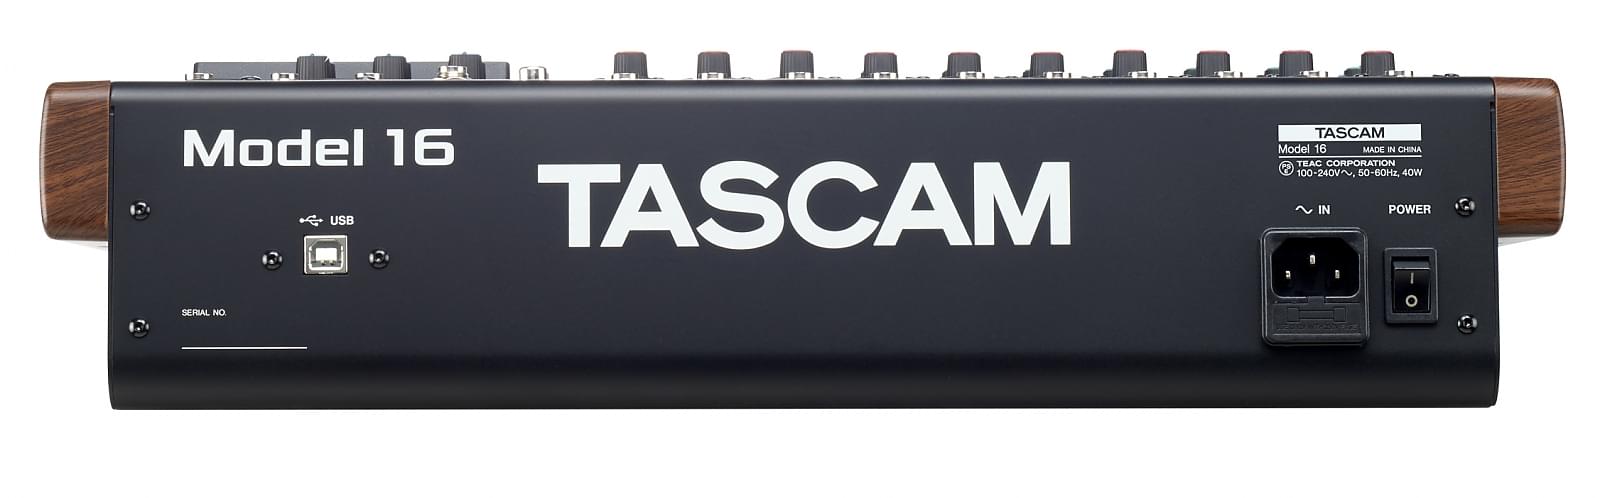 Rückansicht | Tascam Model 16